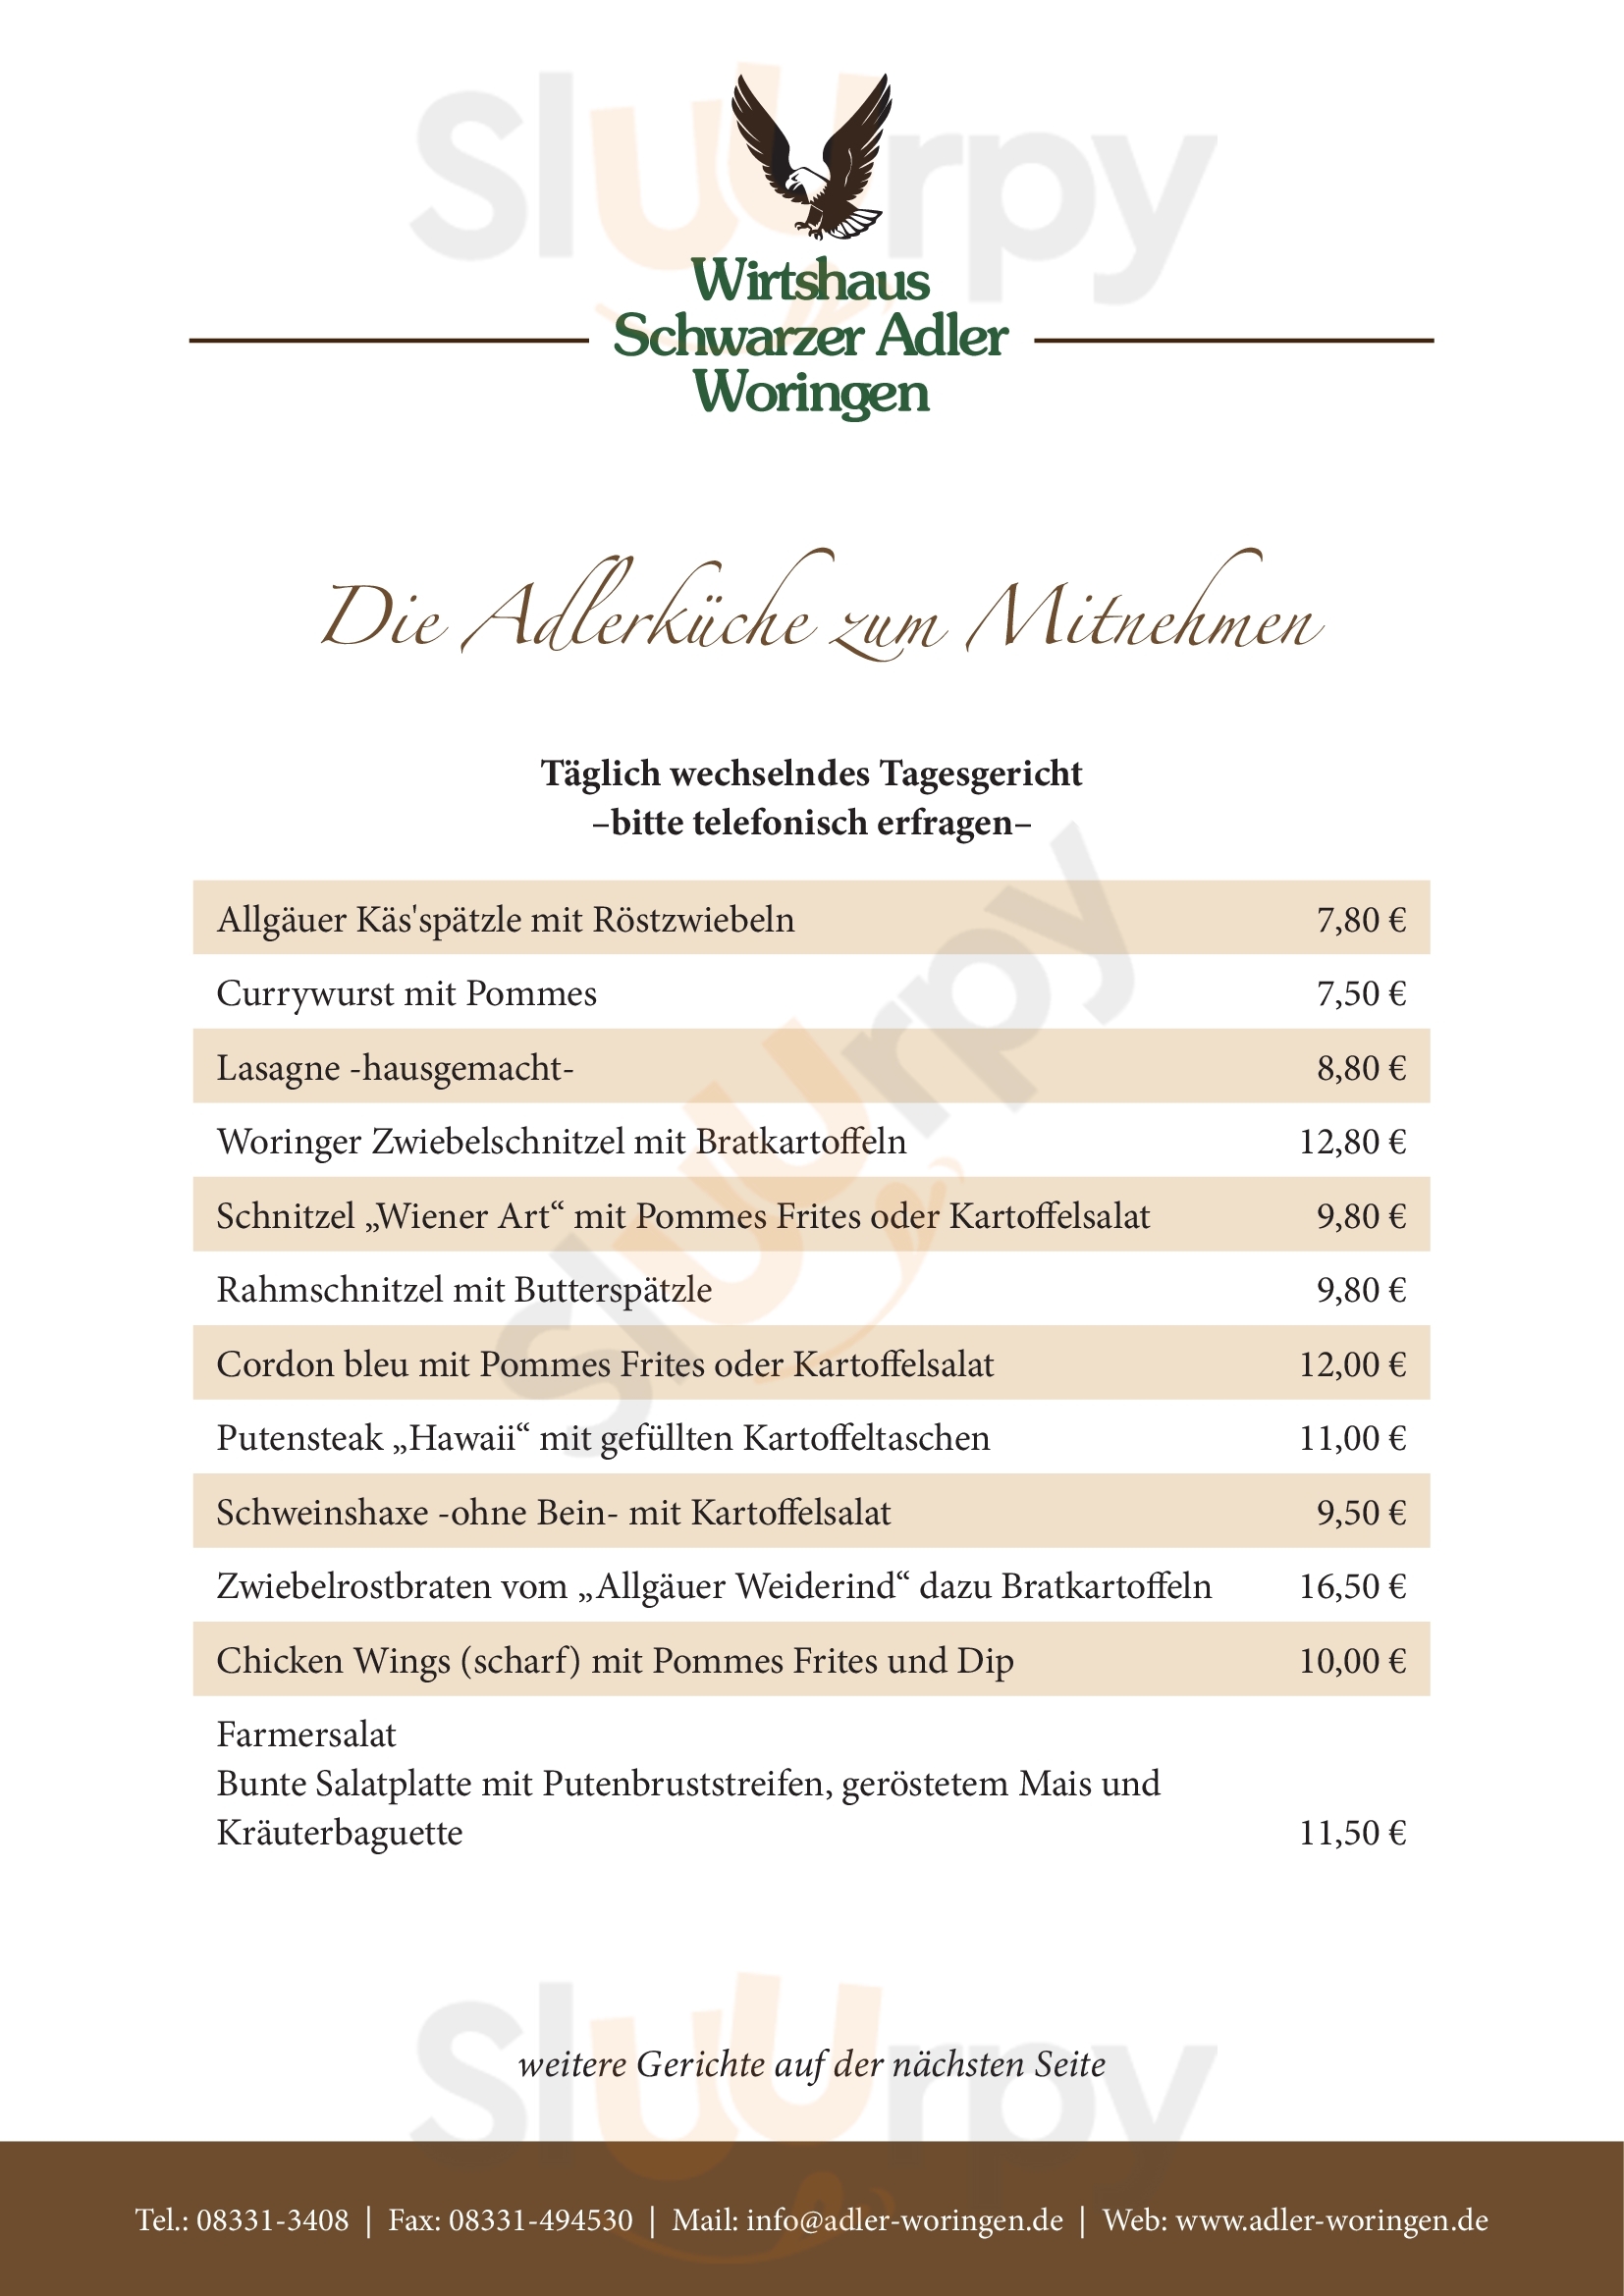 Wirtshaus Schwarzer Adler Woringen Menu - 1